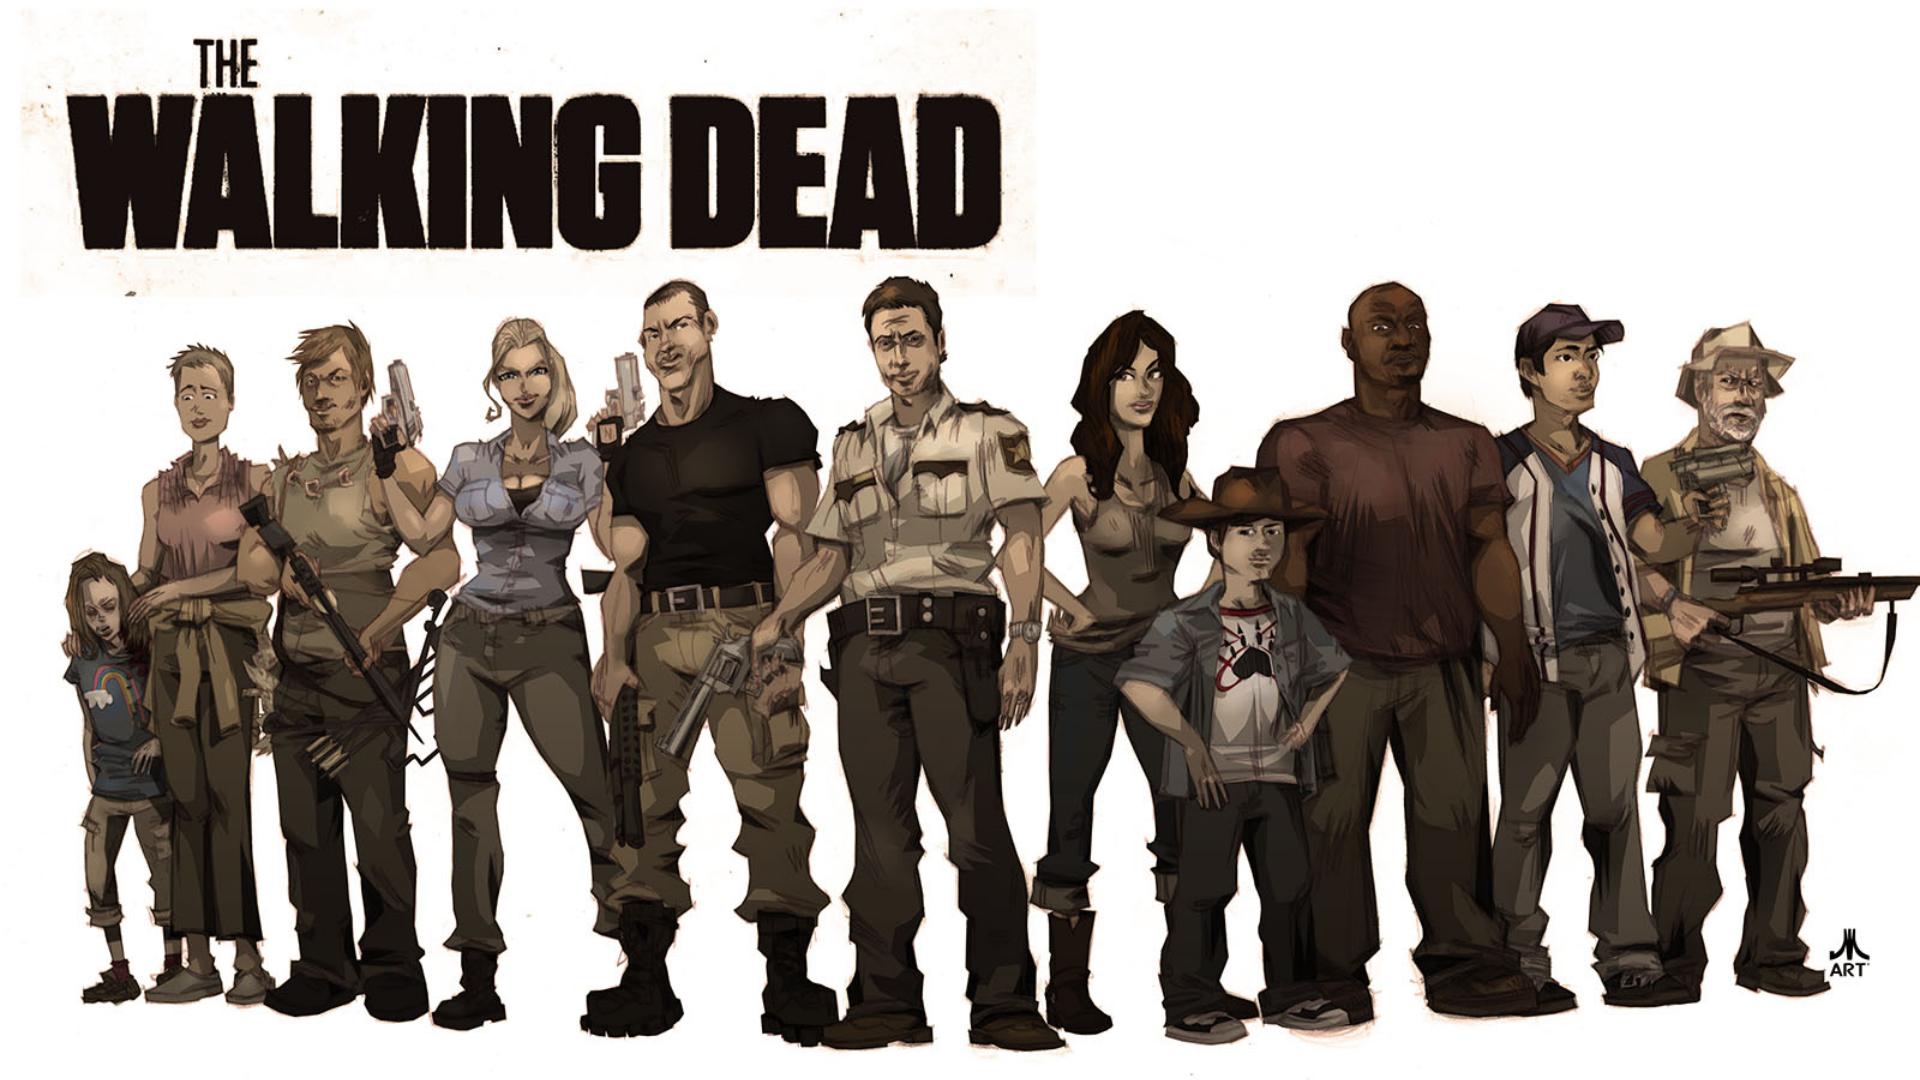 The Walking Dead Wallpaper - Atlanta , HD Wallpaper & Backgrounds